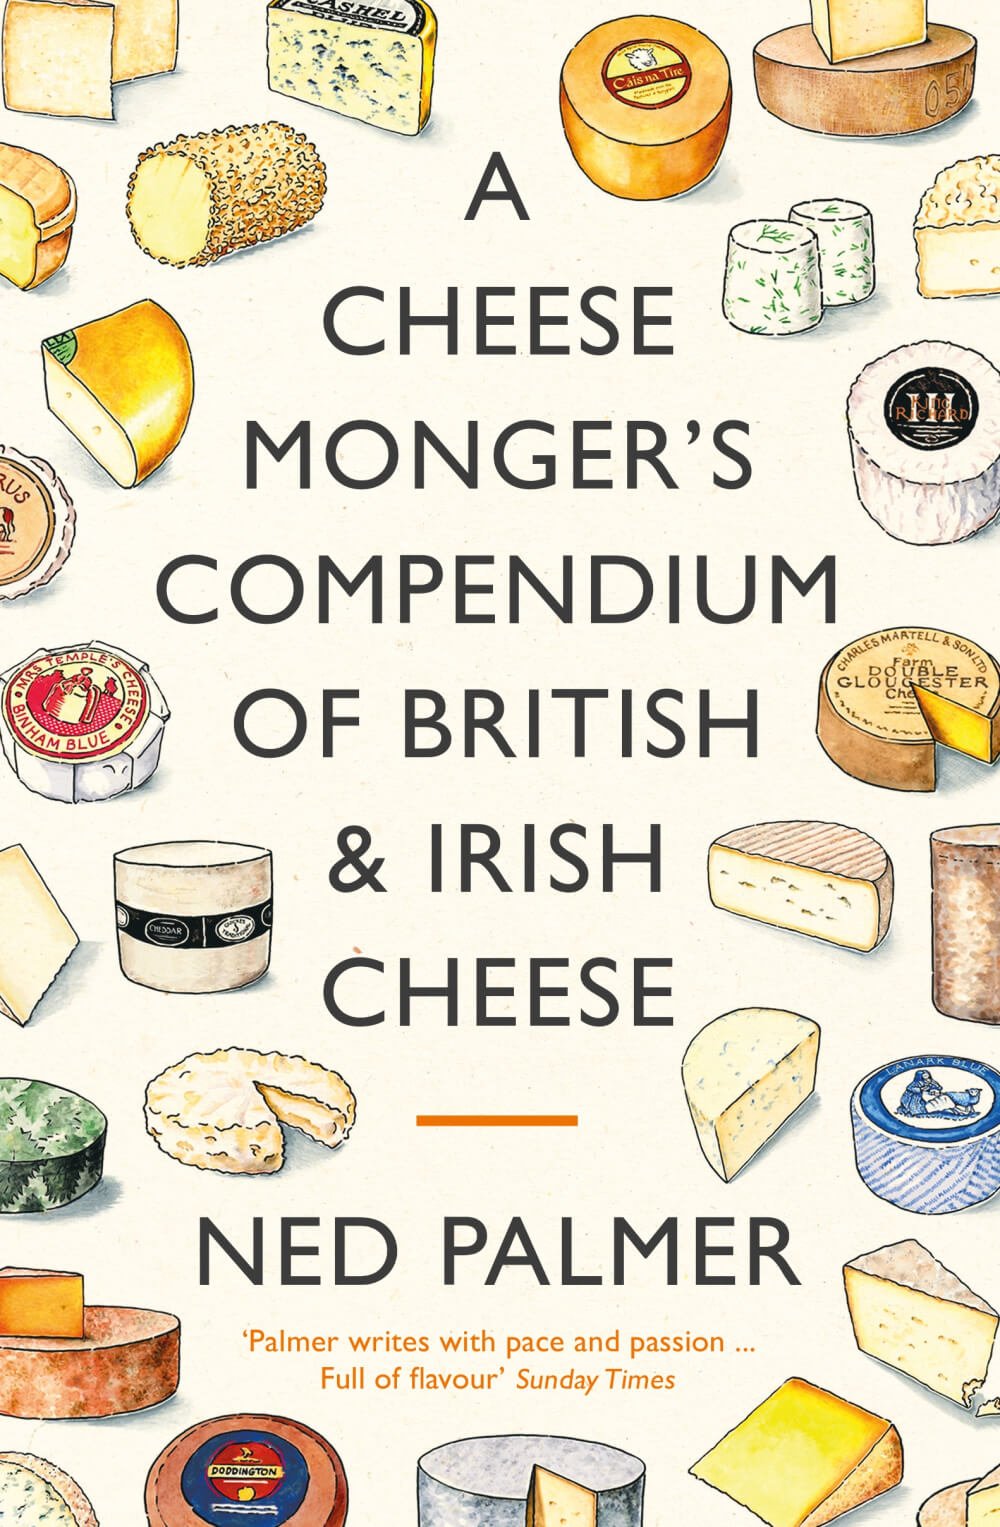 A Cheesemonger's Compendium of British and Irish Cheese